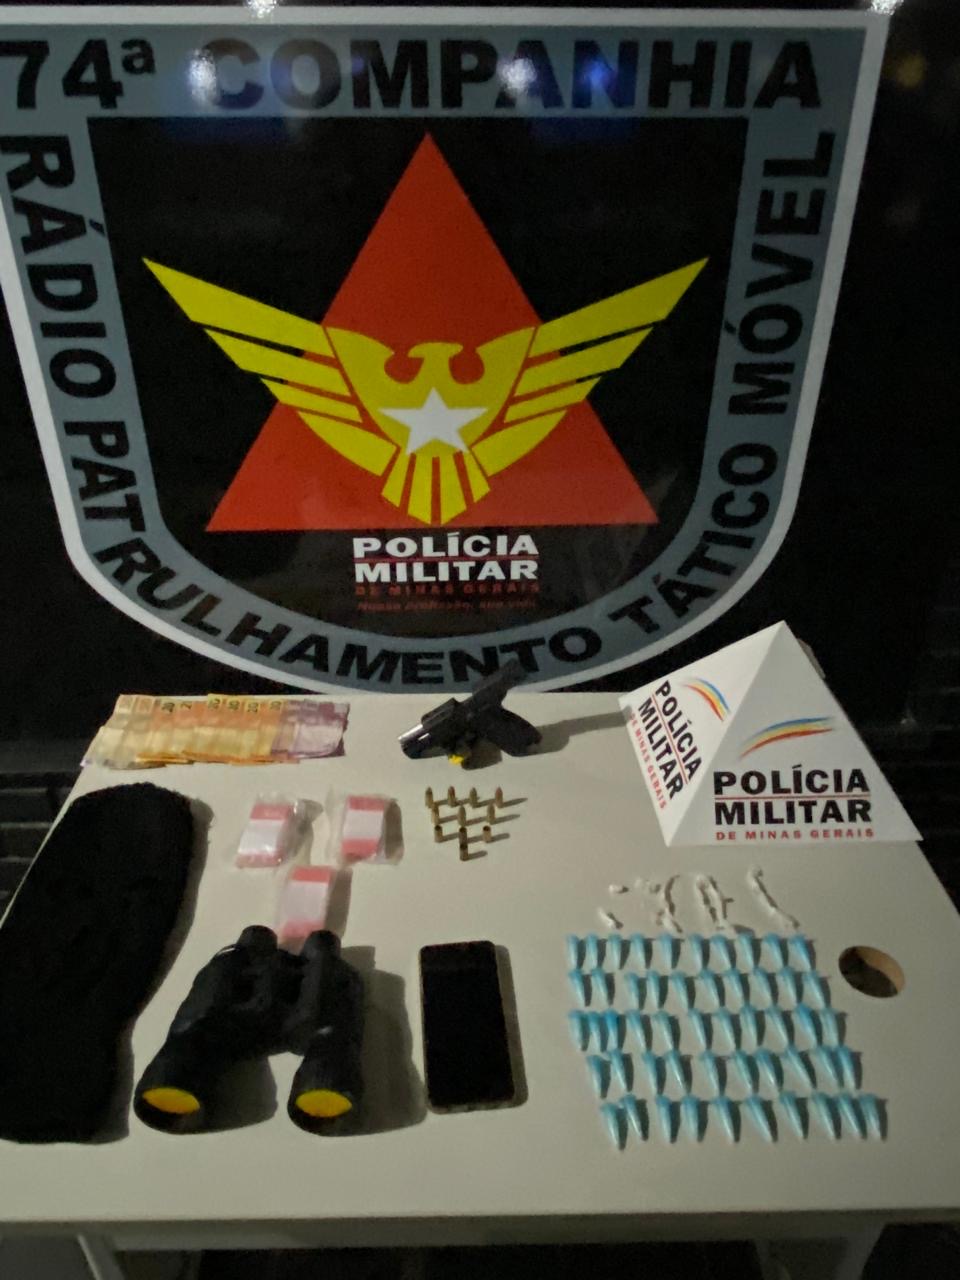 PM apreende binóculo, drogas, munições e uma pistola após troca de tiros no Joaquim Pedrosa, em Teófilo Otoni